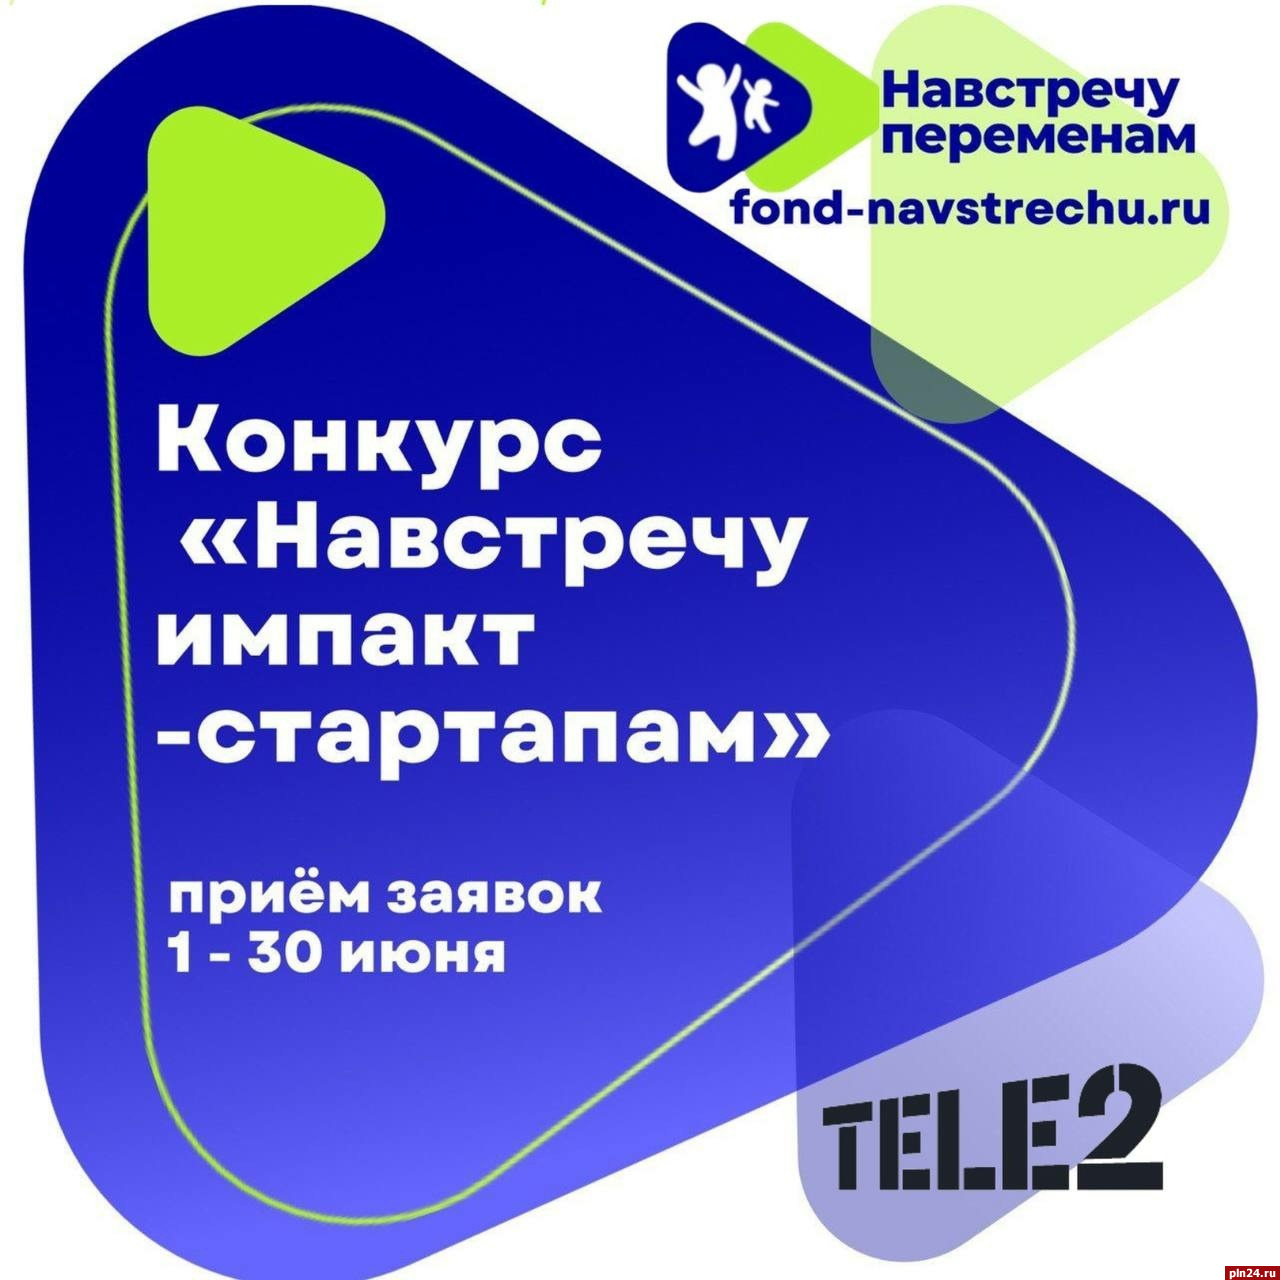 Tele2 выделит гранты на развитие цифровых проектов по соцпроблемам в сфере детства